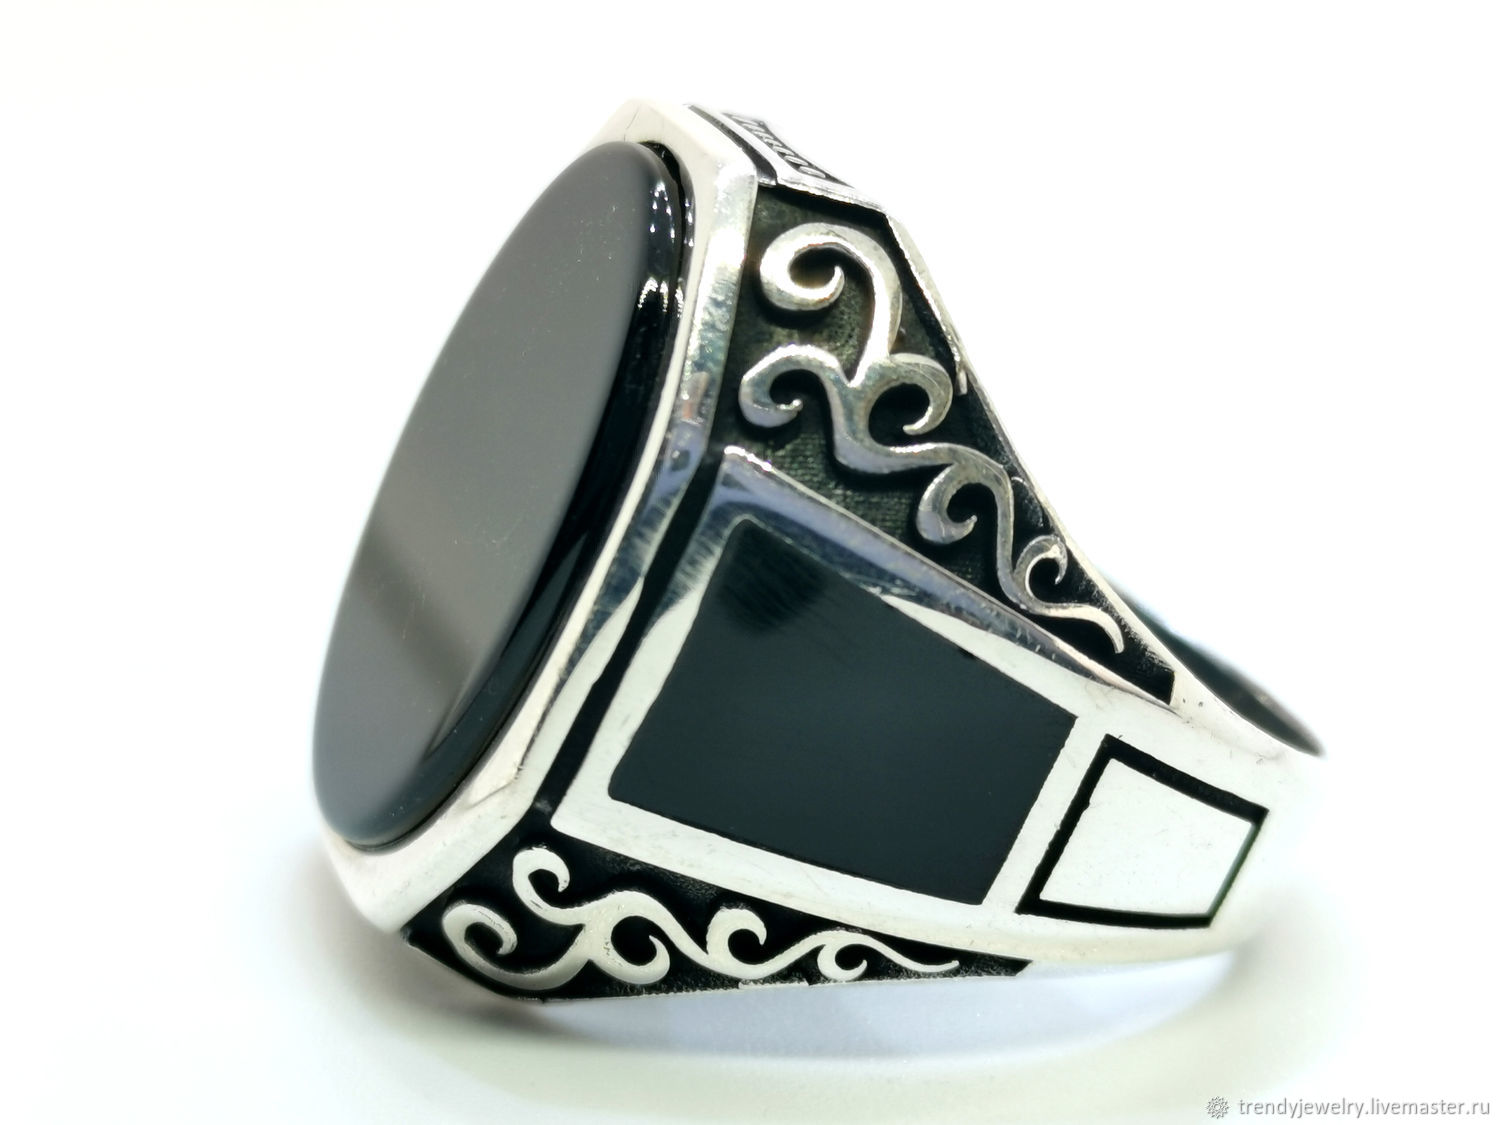 Перстни мужские серебро с камнями. Кольцо мужское серебро печатка черный камень. Печатка агат перстень кольцо. Damiani перстень с агатом. Черный агат серебряный перстень кольцо для мужчины с черным камнем.